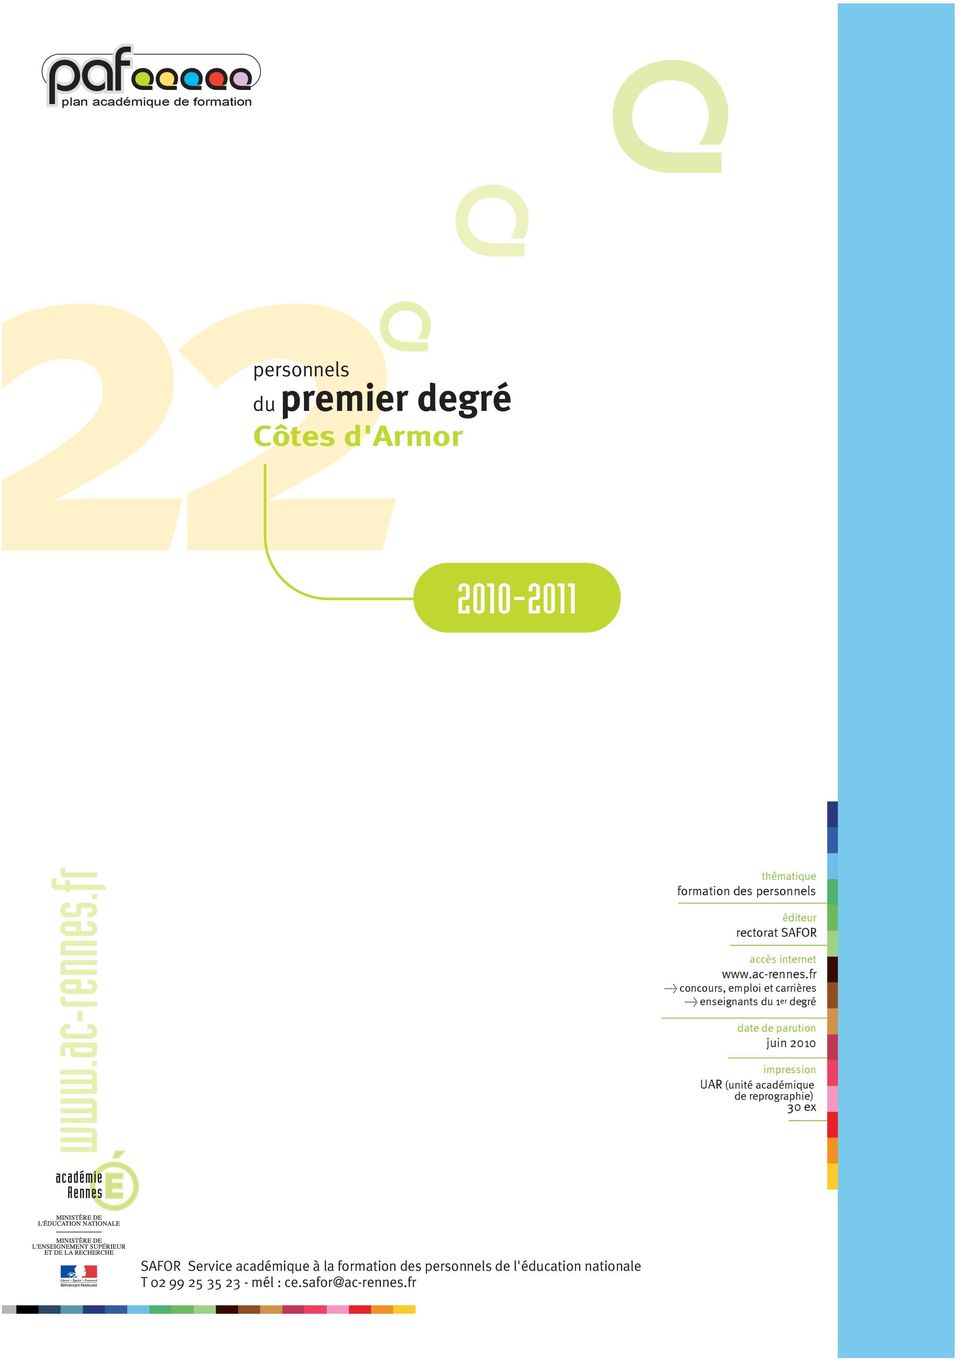 fr > concours, emploi et carrières > enseignants du 1er degré date de parution juin 2010 impression